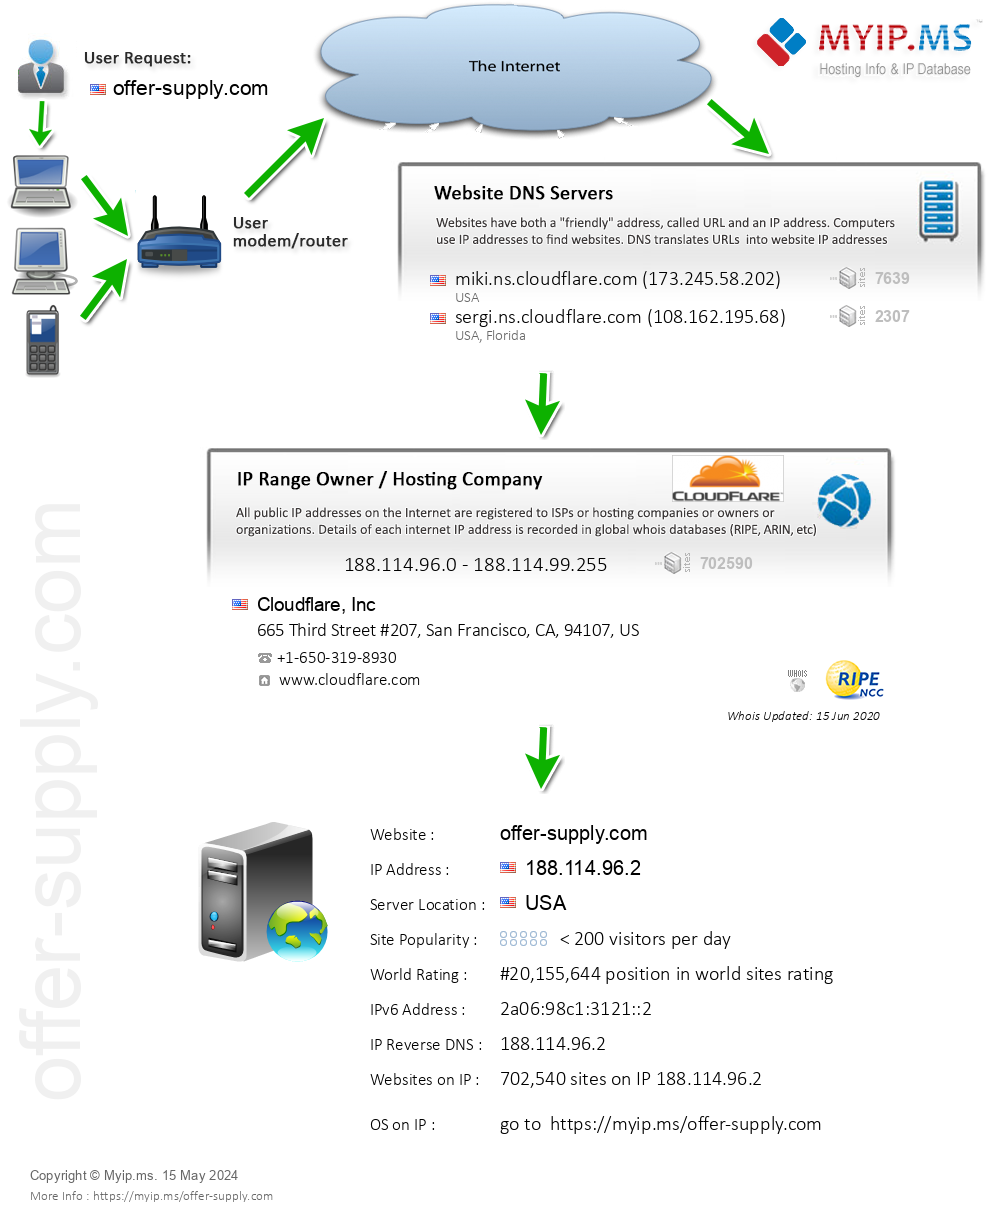 Offer-supply.com - Website Hosting Visual IP Diagram